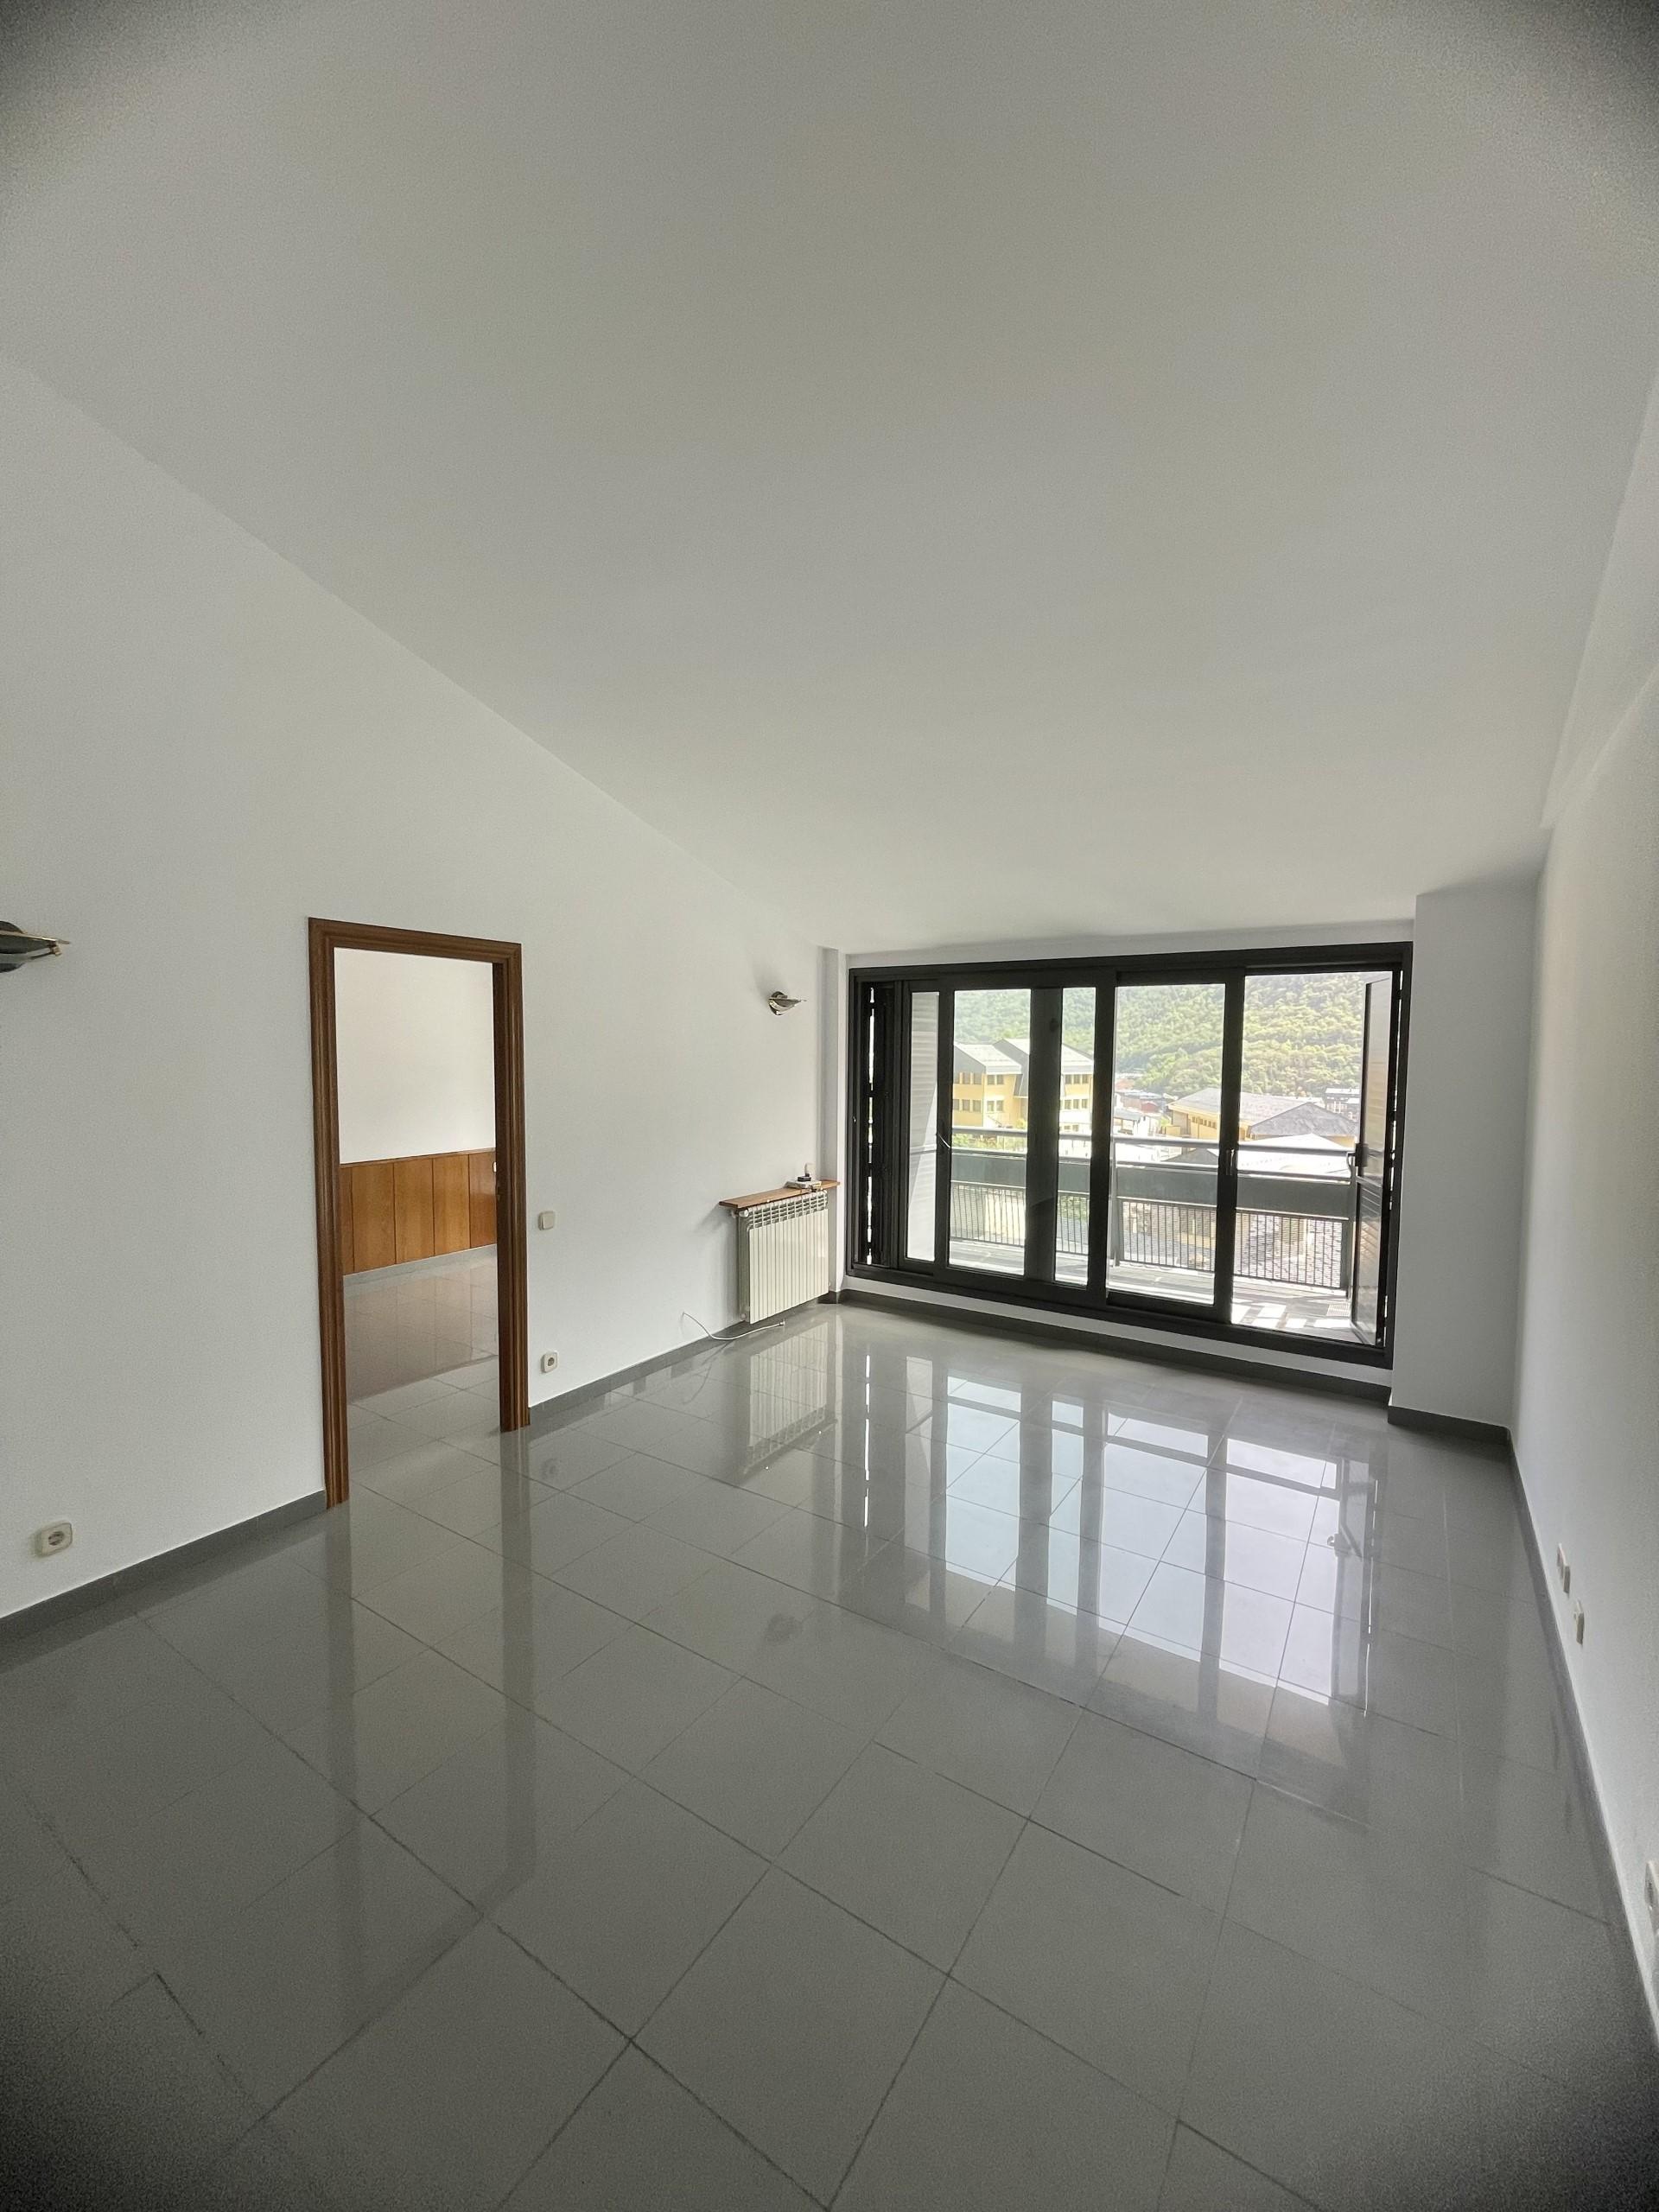 Piso en venta en Andorra la Vella, 2 habitaciones, 90 metros